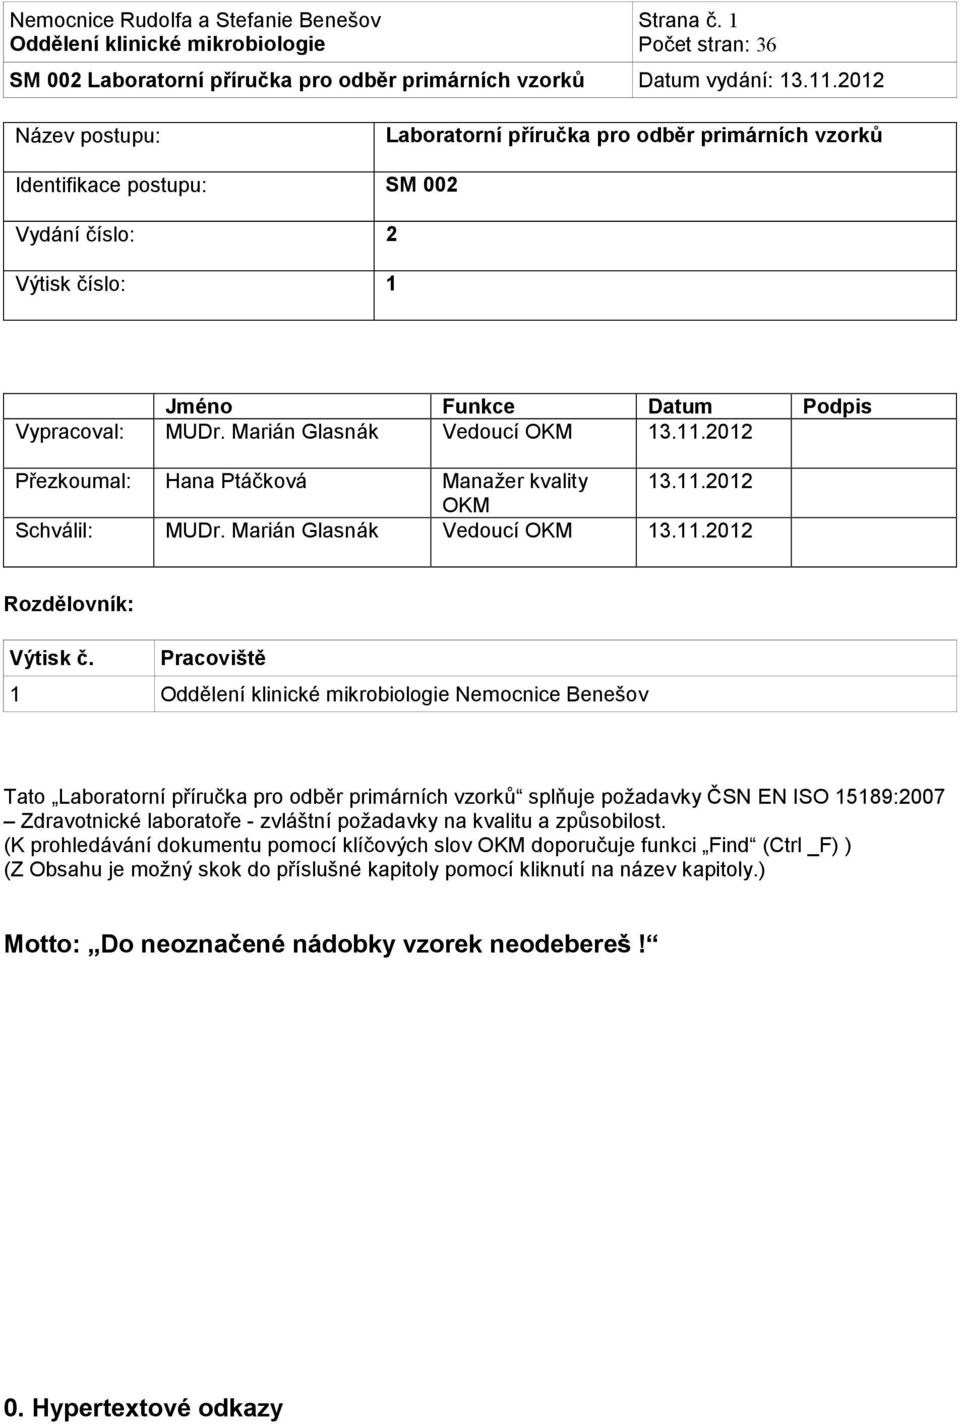 Pracoviště 1 Nemocnice Benešov Tato Laboratorní příručka pro odběr primárních vzorků splňuje požadavky ČSN EN ISO 15189:2007 Zdravotnické laboratoře - zvláštní požadavky na kvalitu a způsobilost.